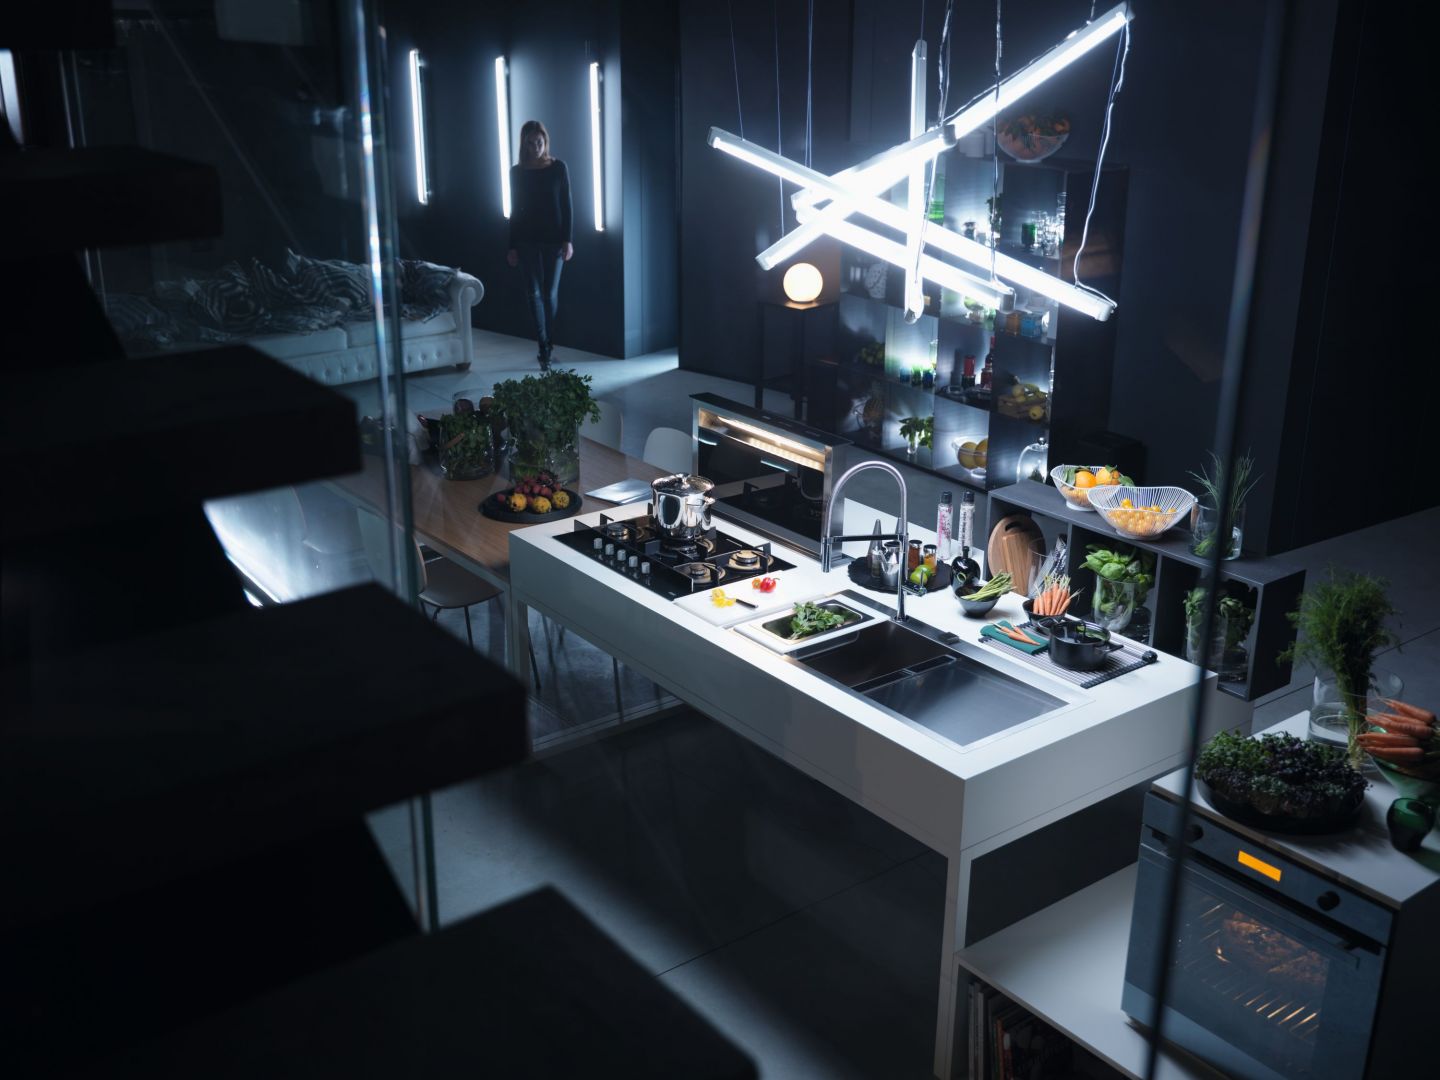 Zlewozmywak, płyta grzewcza i piekarnik z linii CRYSTAL BLACK - wyjątkowe połączenie elegancji z innowacyjną technologią, które idealnie sprawdza się w przestrzeni kuchennej, subtelnie łączącej się z salonem. Franke.